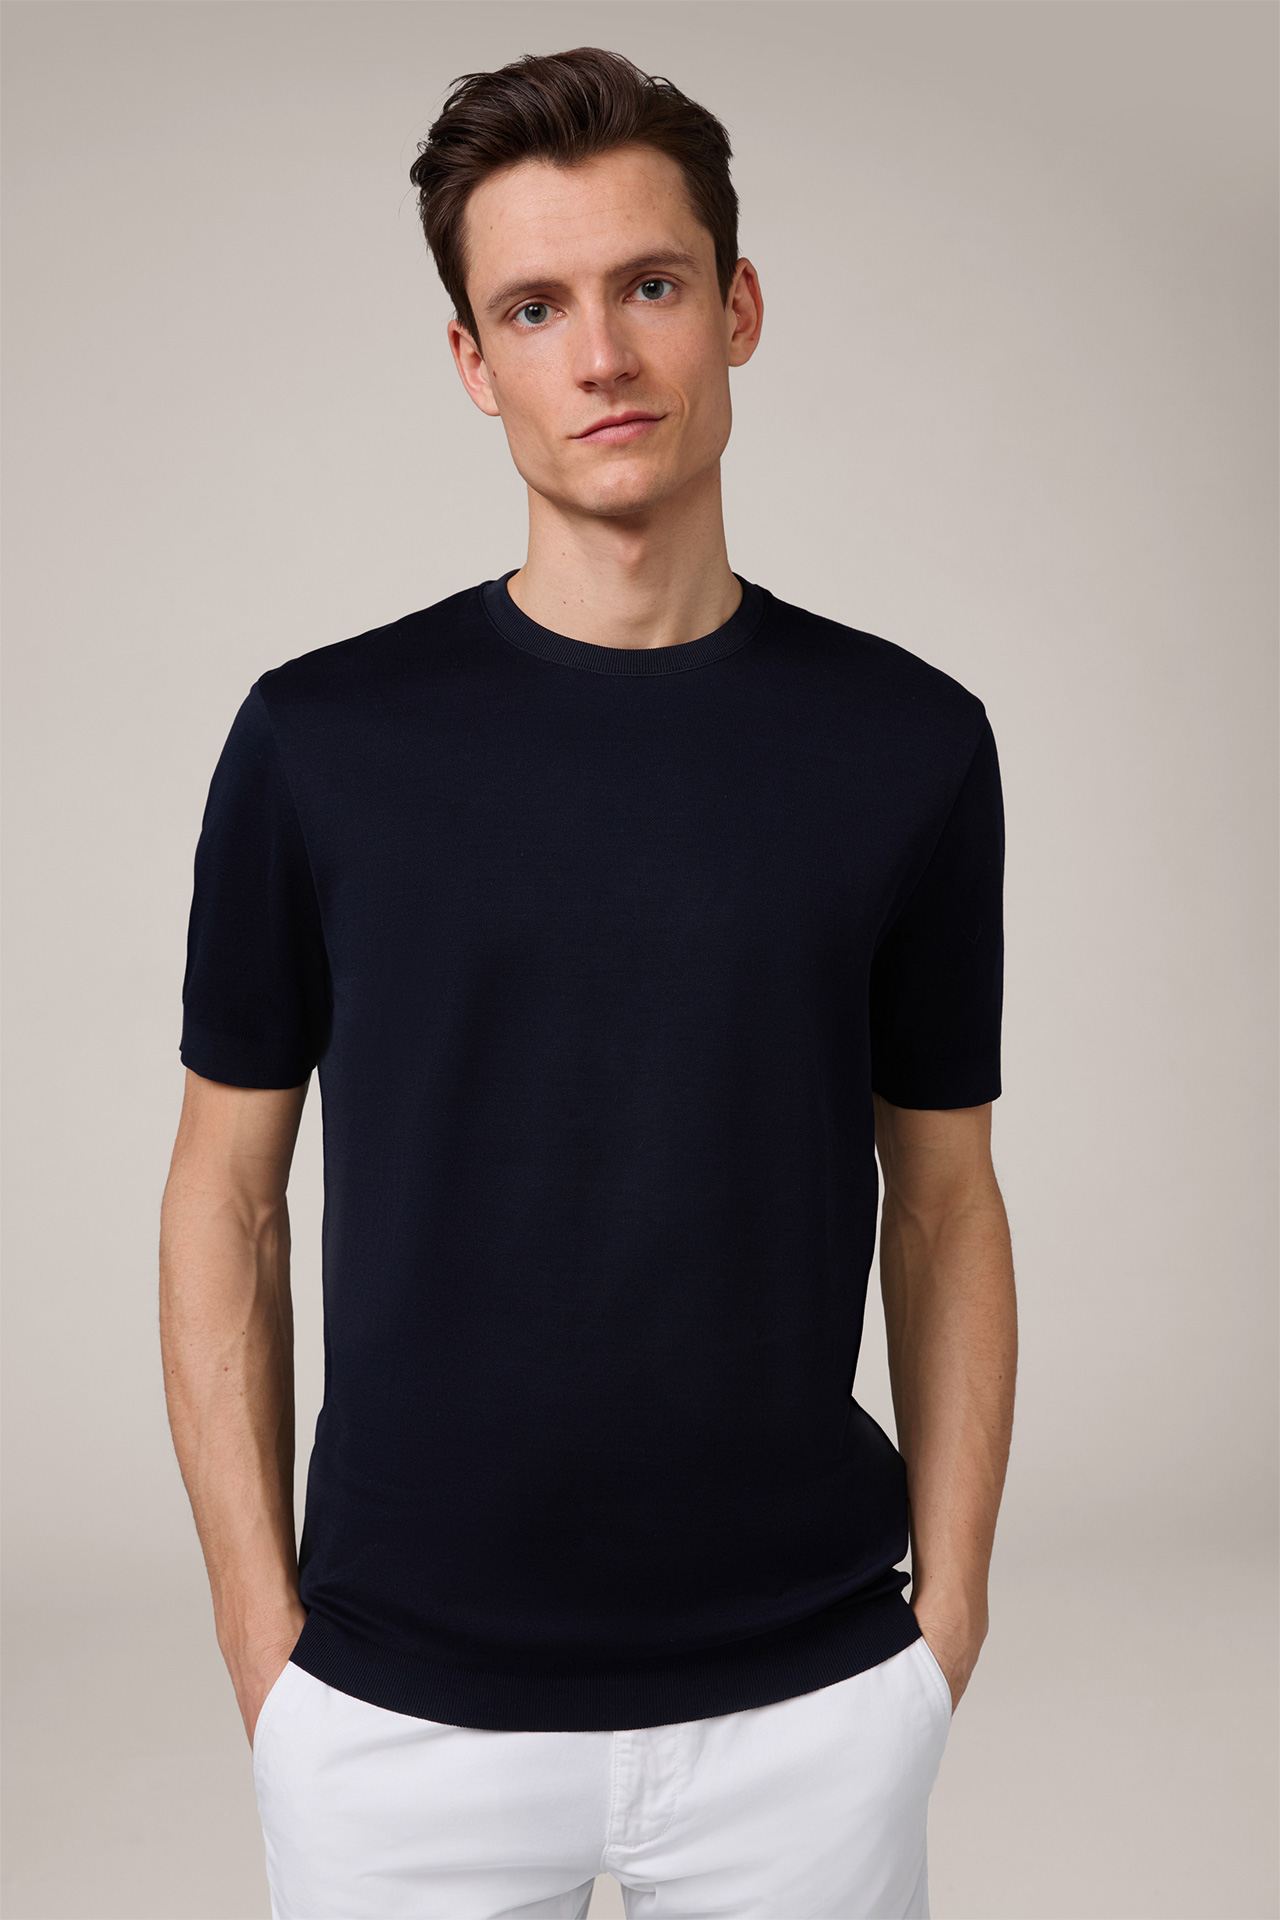 Floro Cotton T-Shirt in Navy